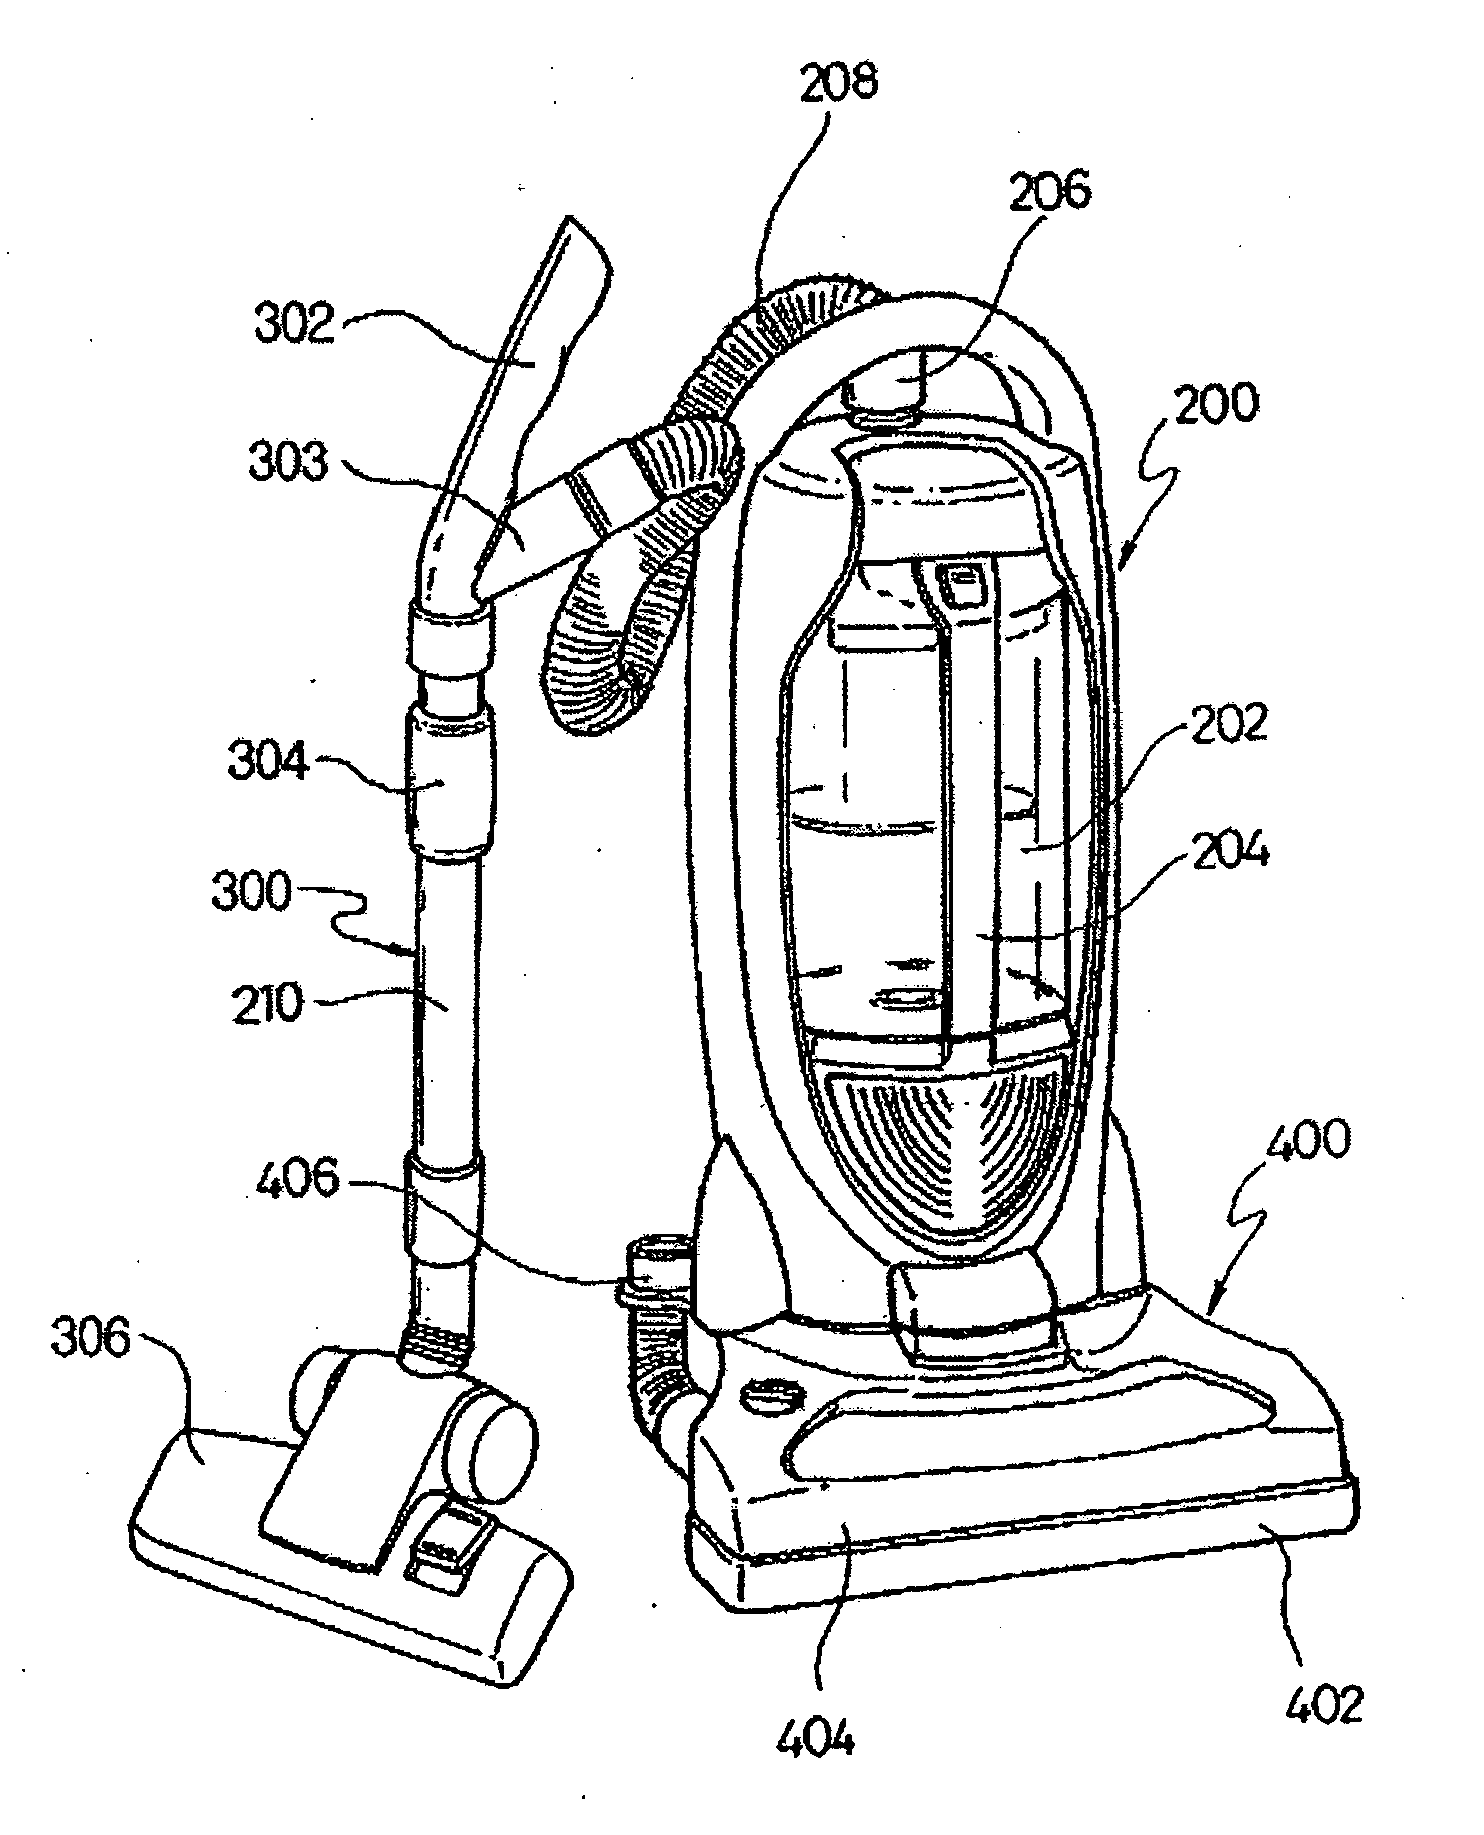 Multi-functional vacuum cleaner